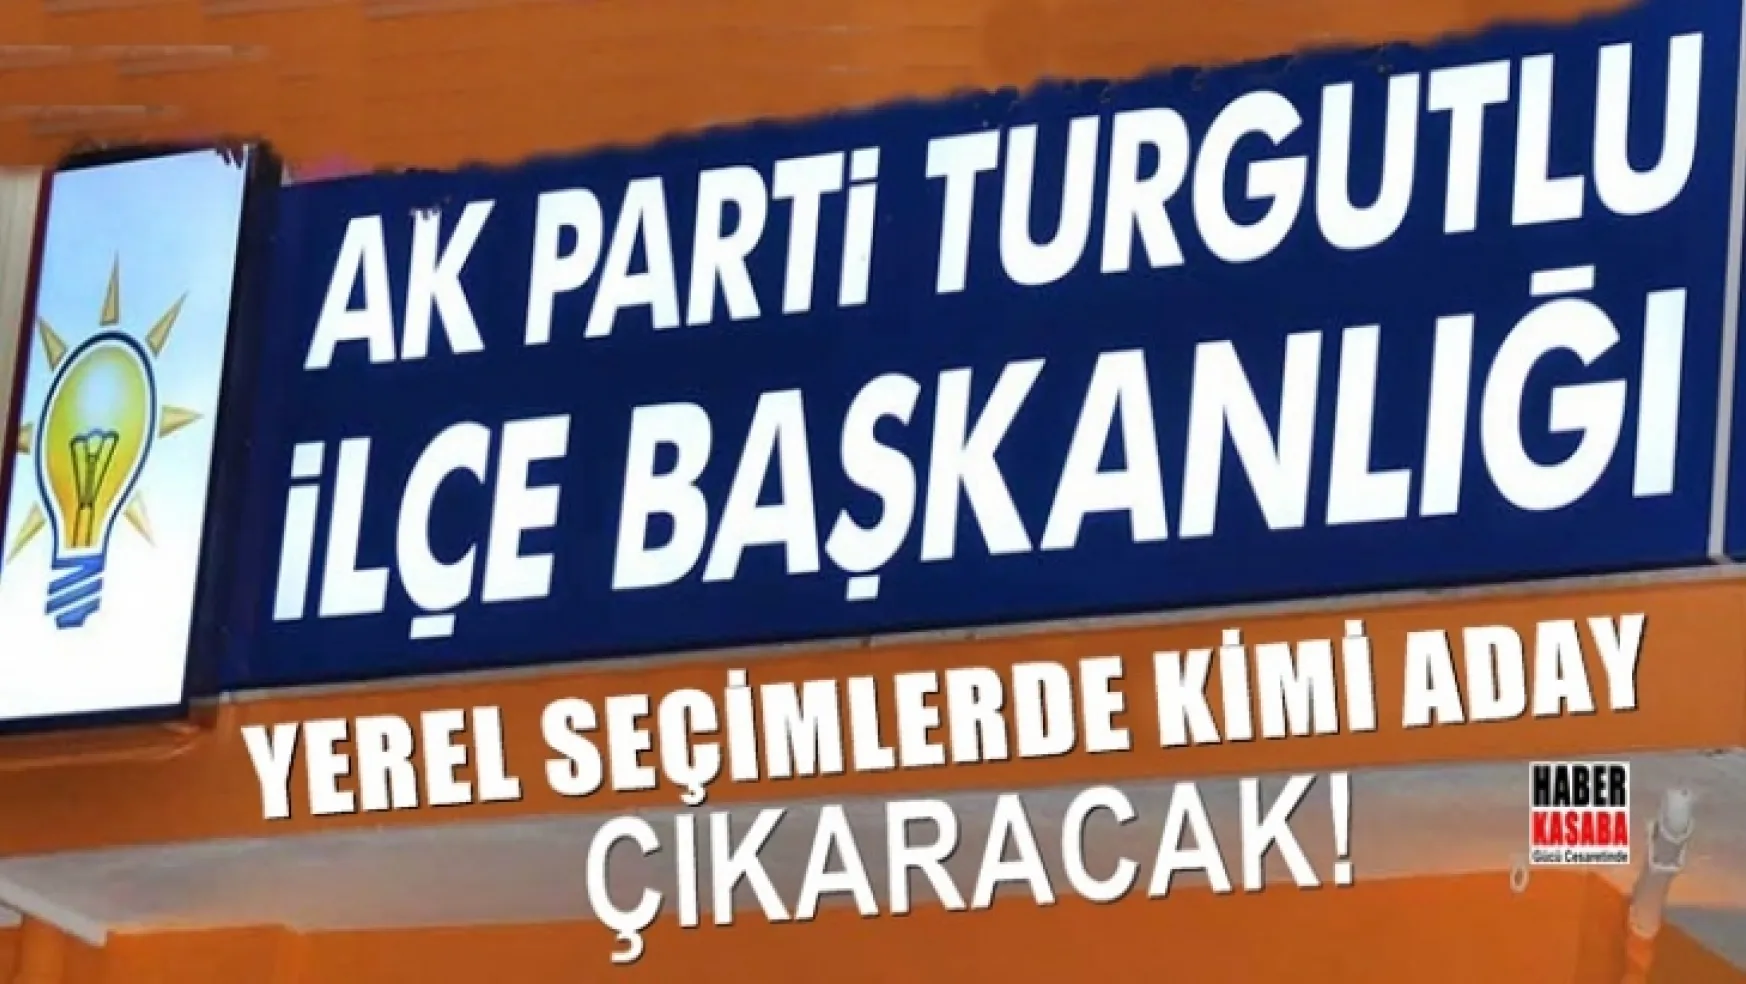 Turgutlu AK Parti Yerel seçimlerde kimi aday gösterecek!...